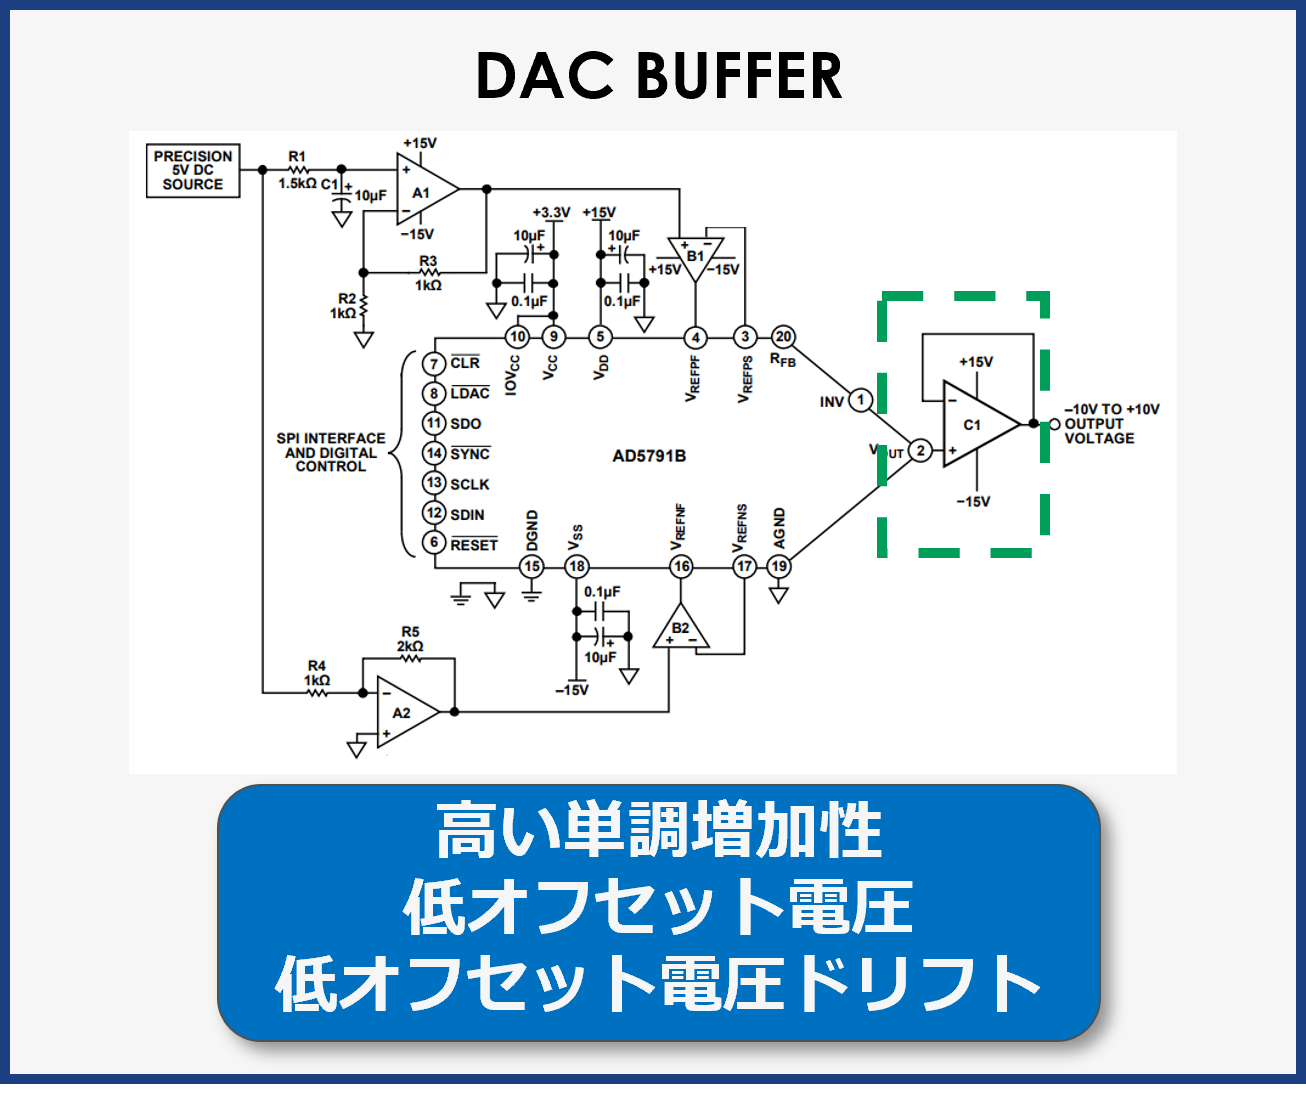 D/A converter buffer